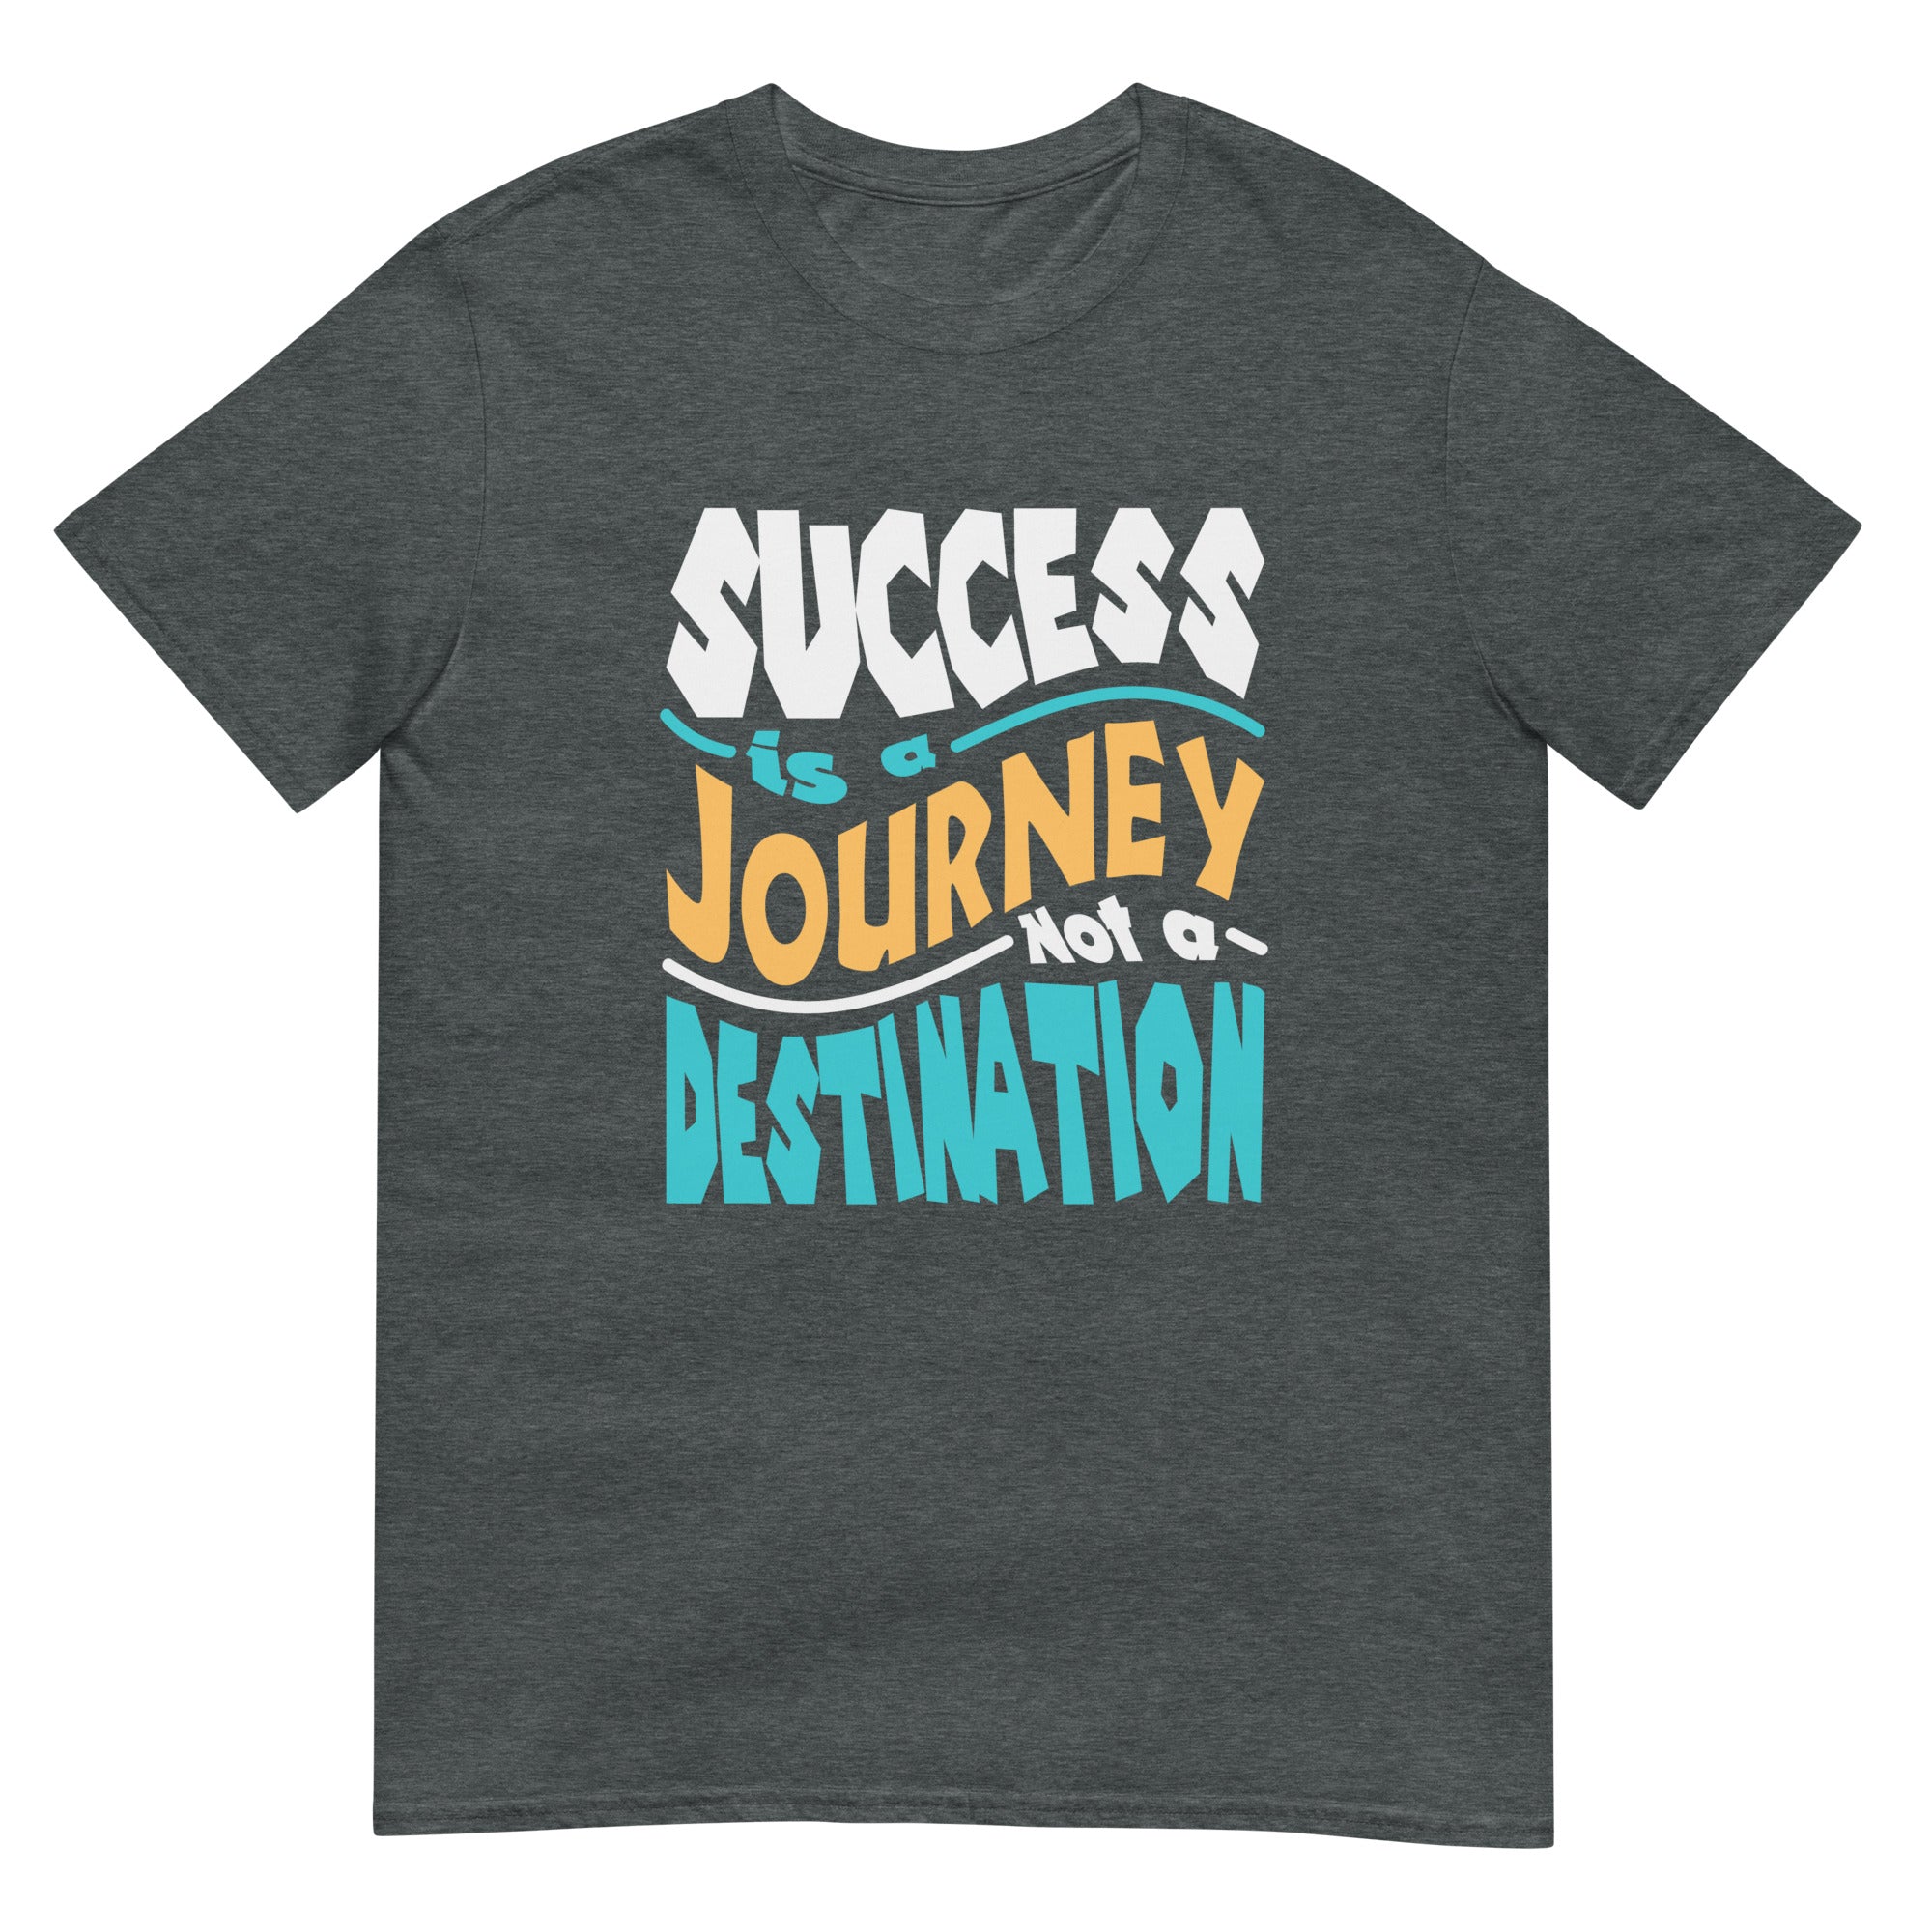 Success is A Journey, Not A Destination - Short-Sleeve Unisex T-Shirt